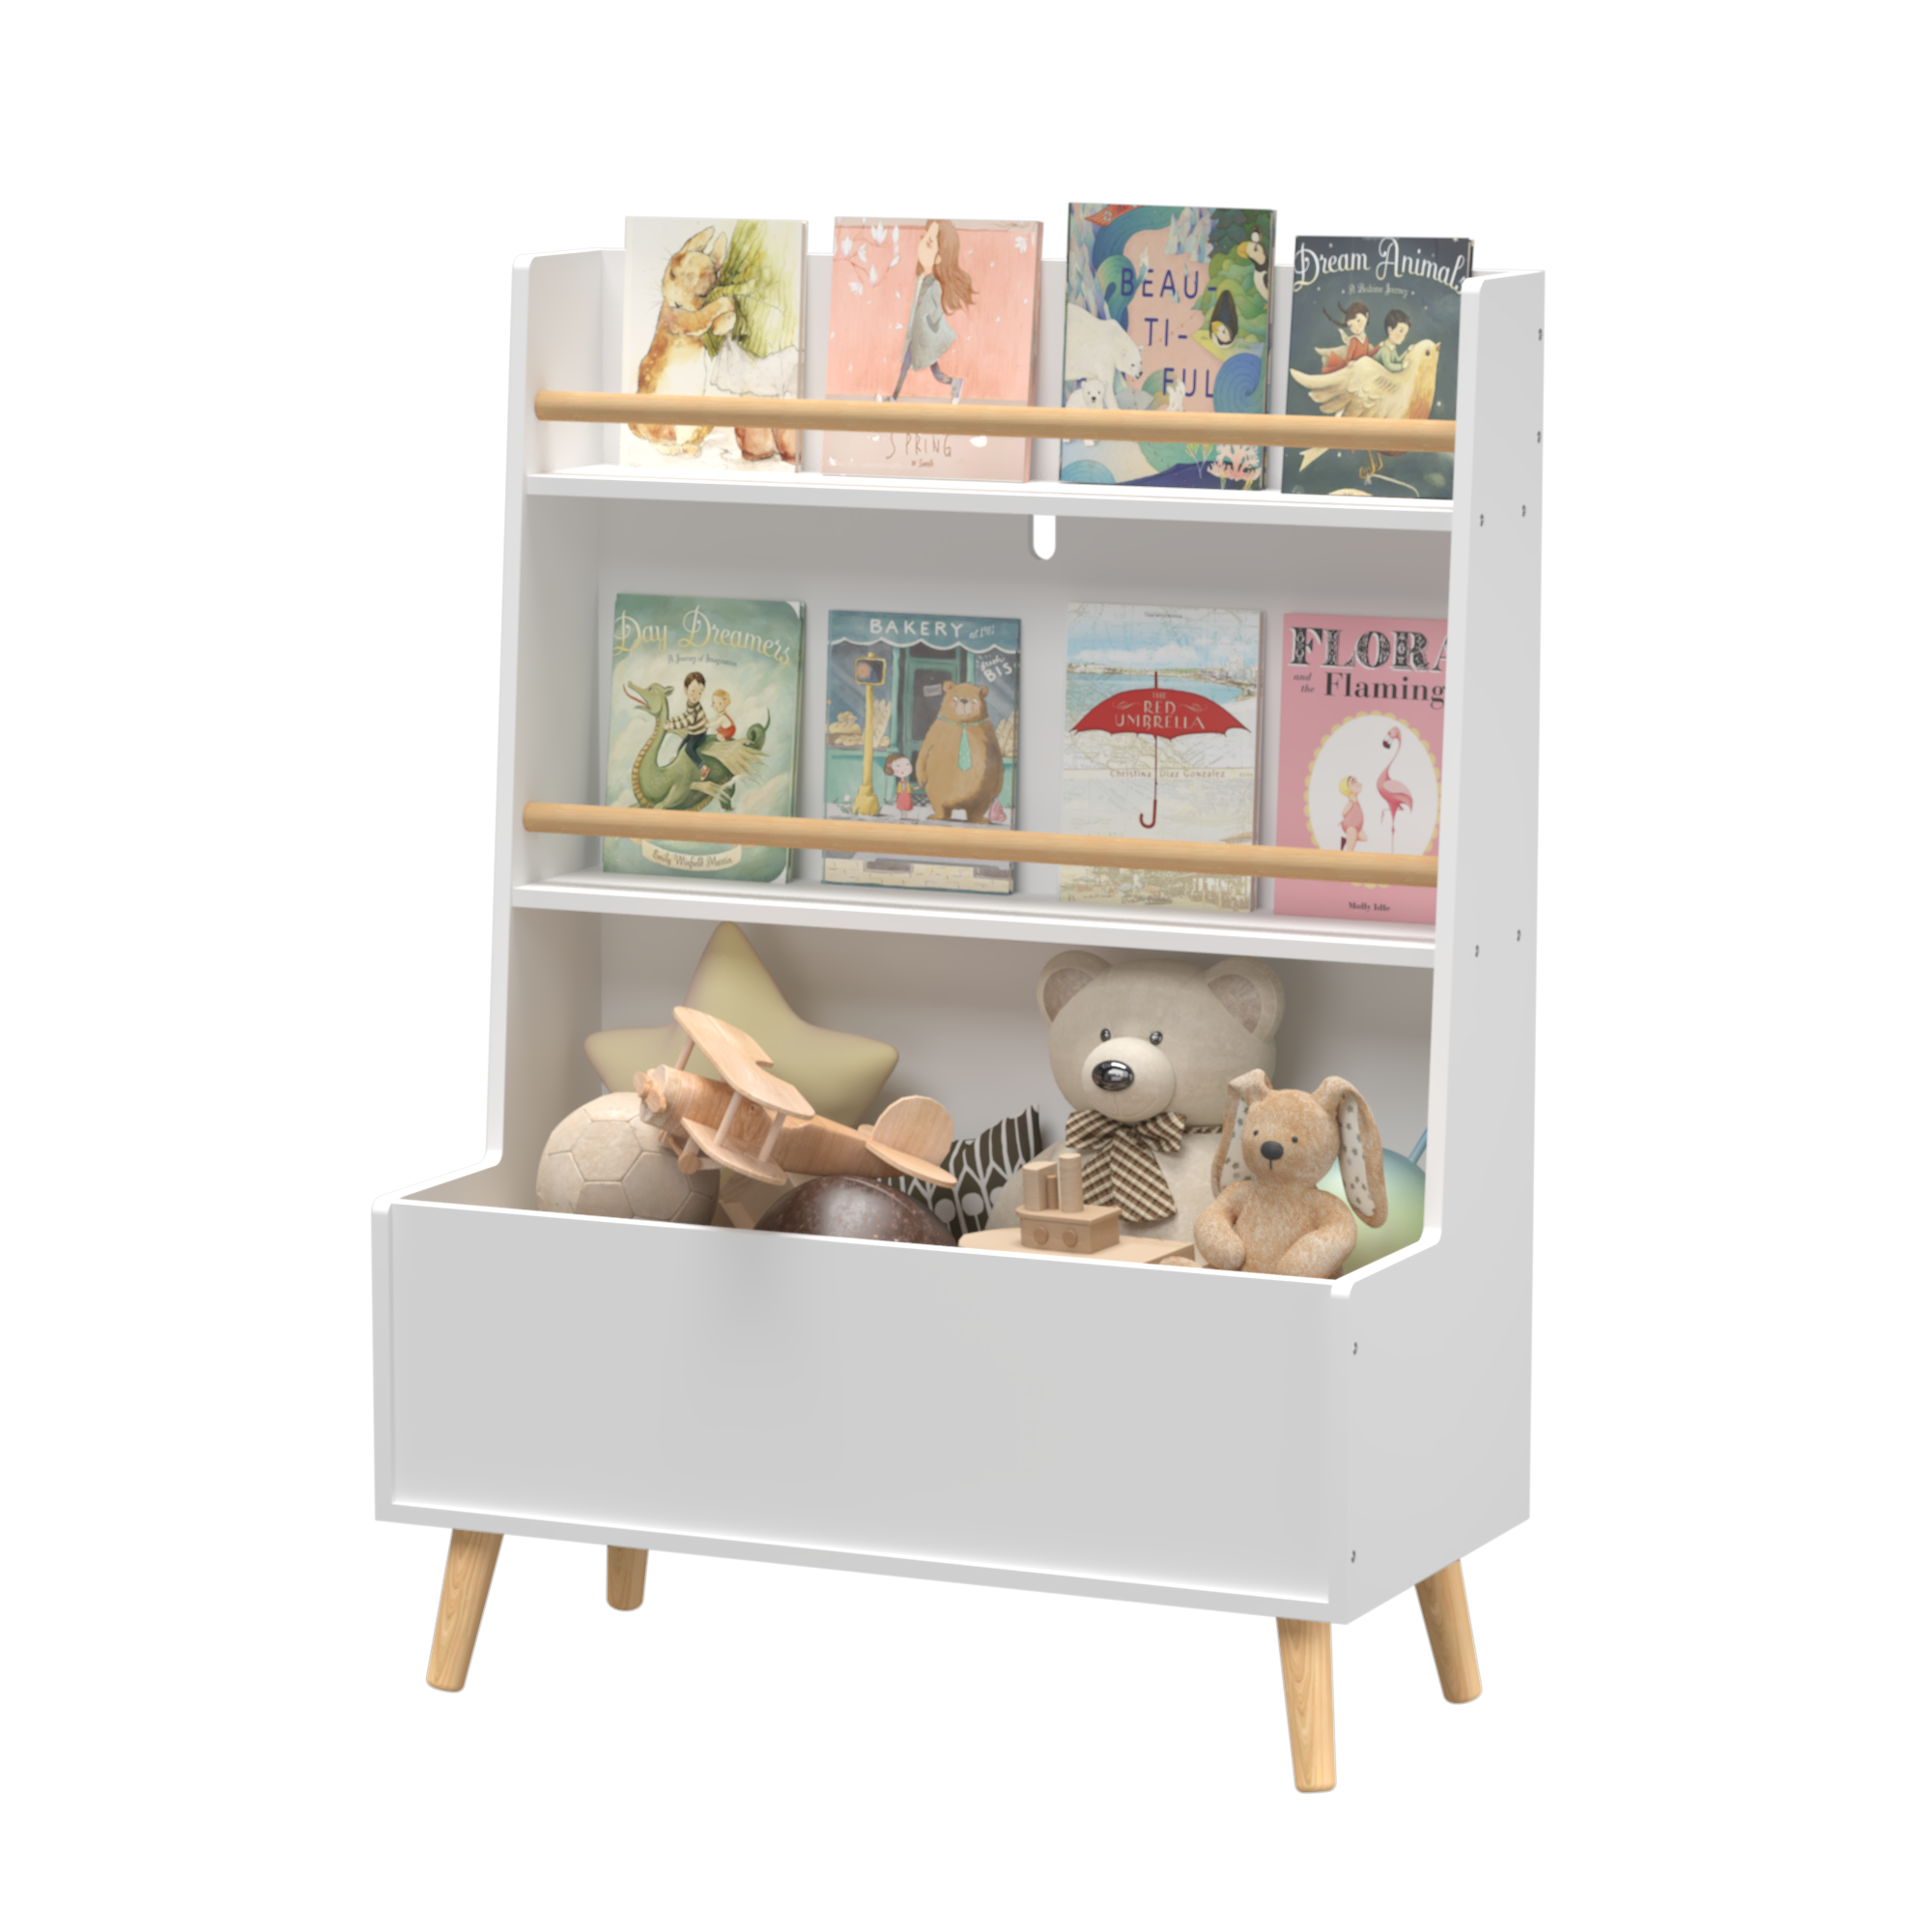 Bellemave Kids Bookshelf,Toy Storage Cabinet Organizer Bellemave